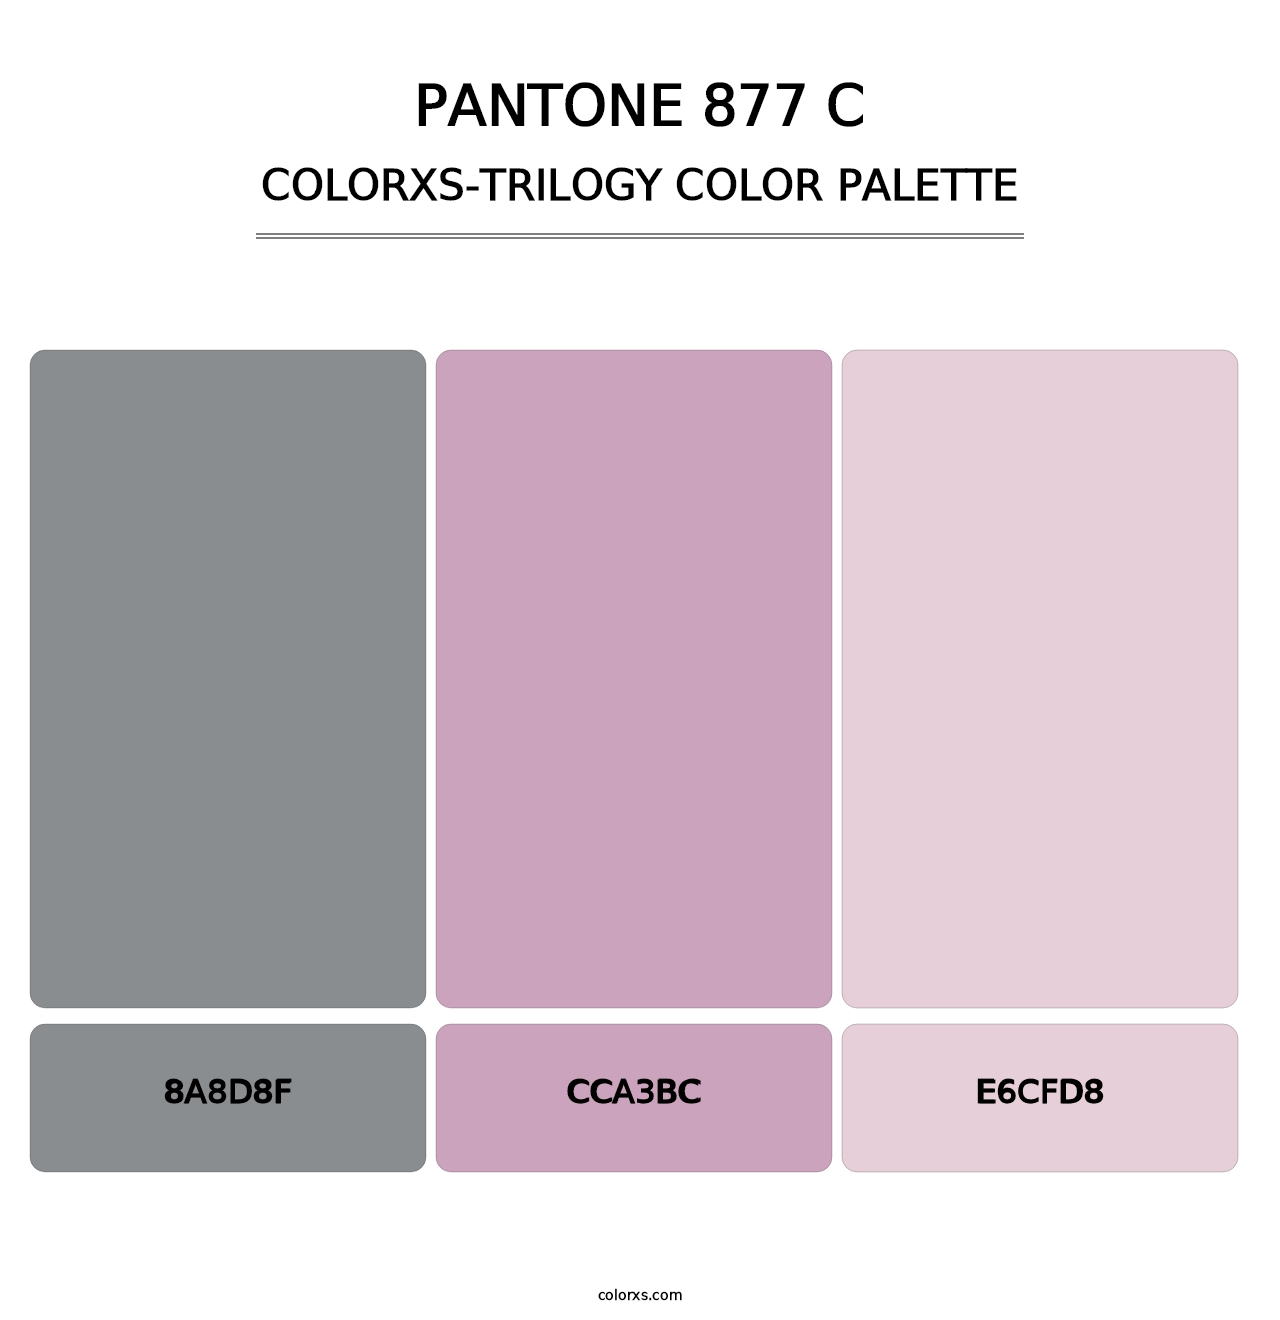 PANTONE 877 C - Colorxs Trilogy Palette